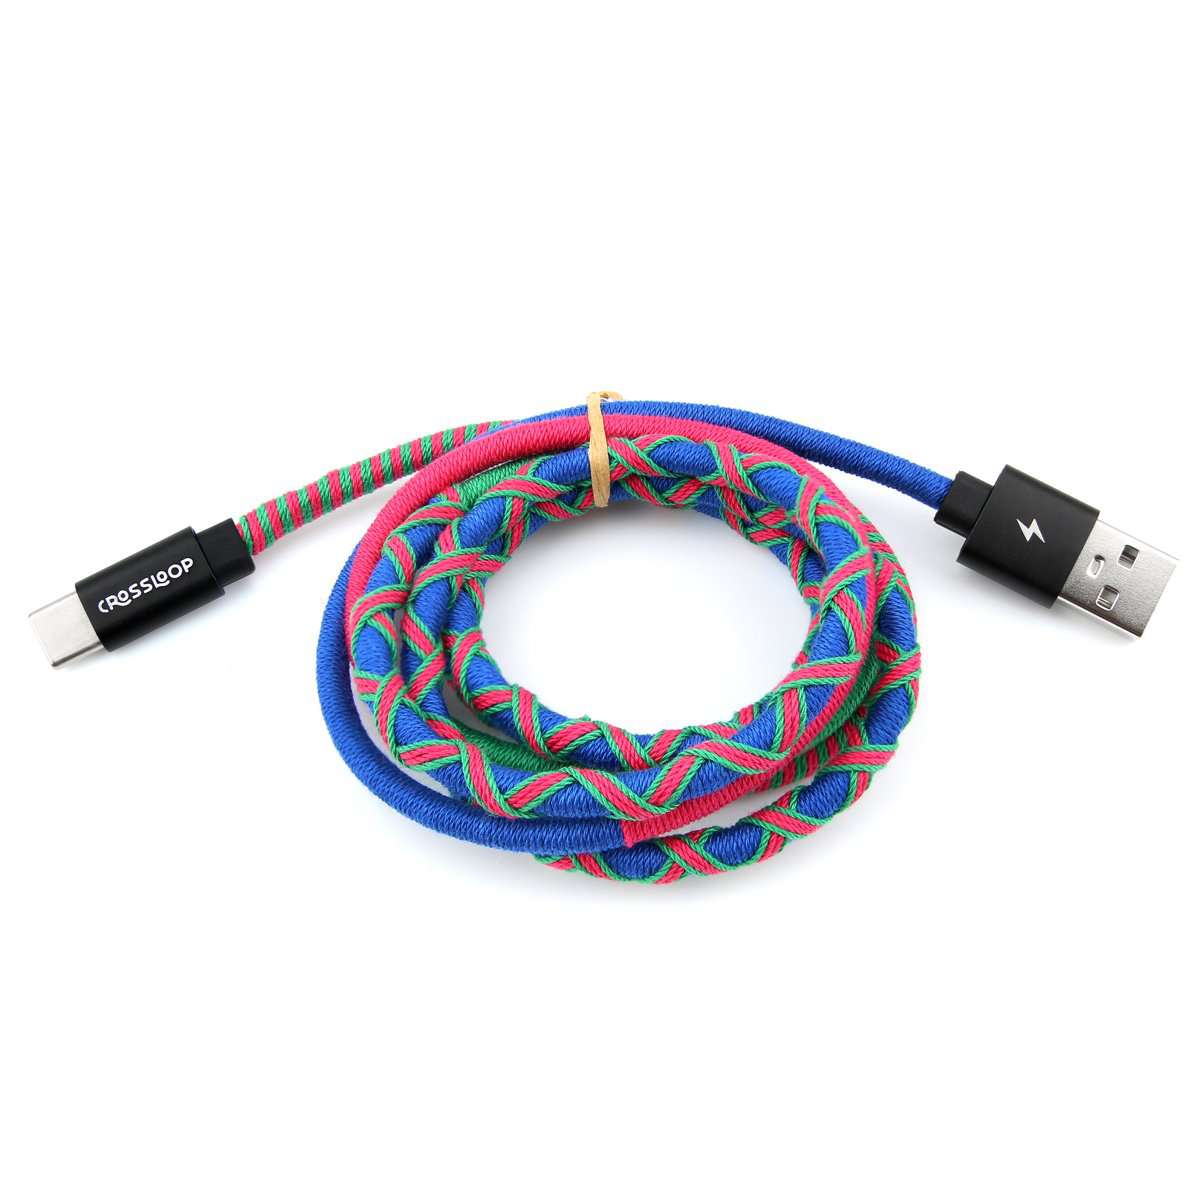 Crossloop 1 meter long fast charging cable in blue & pink